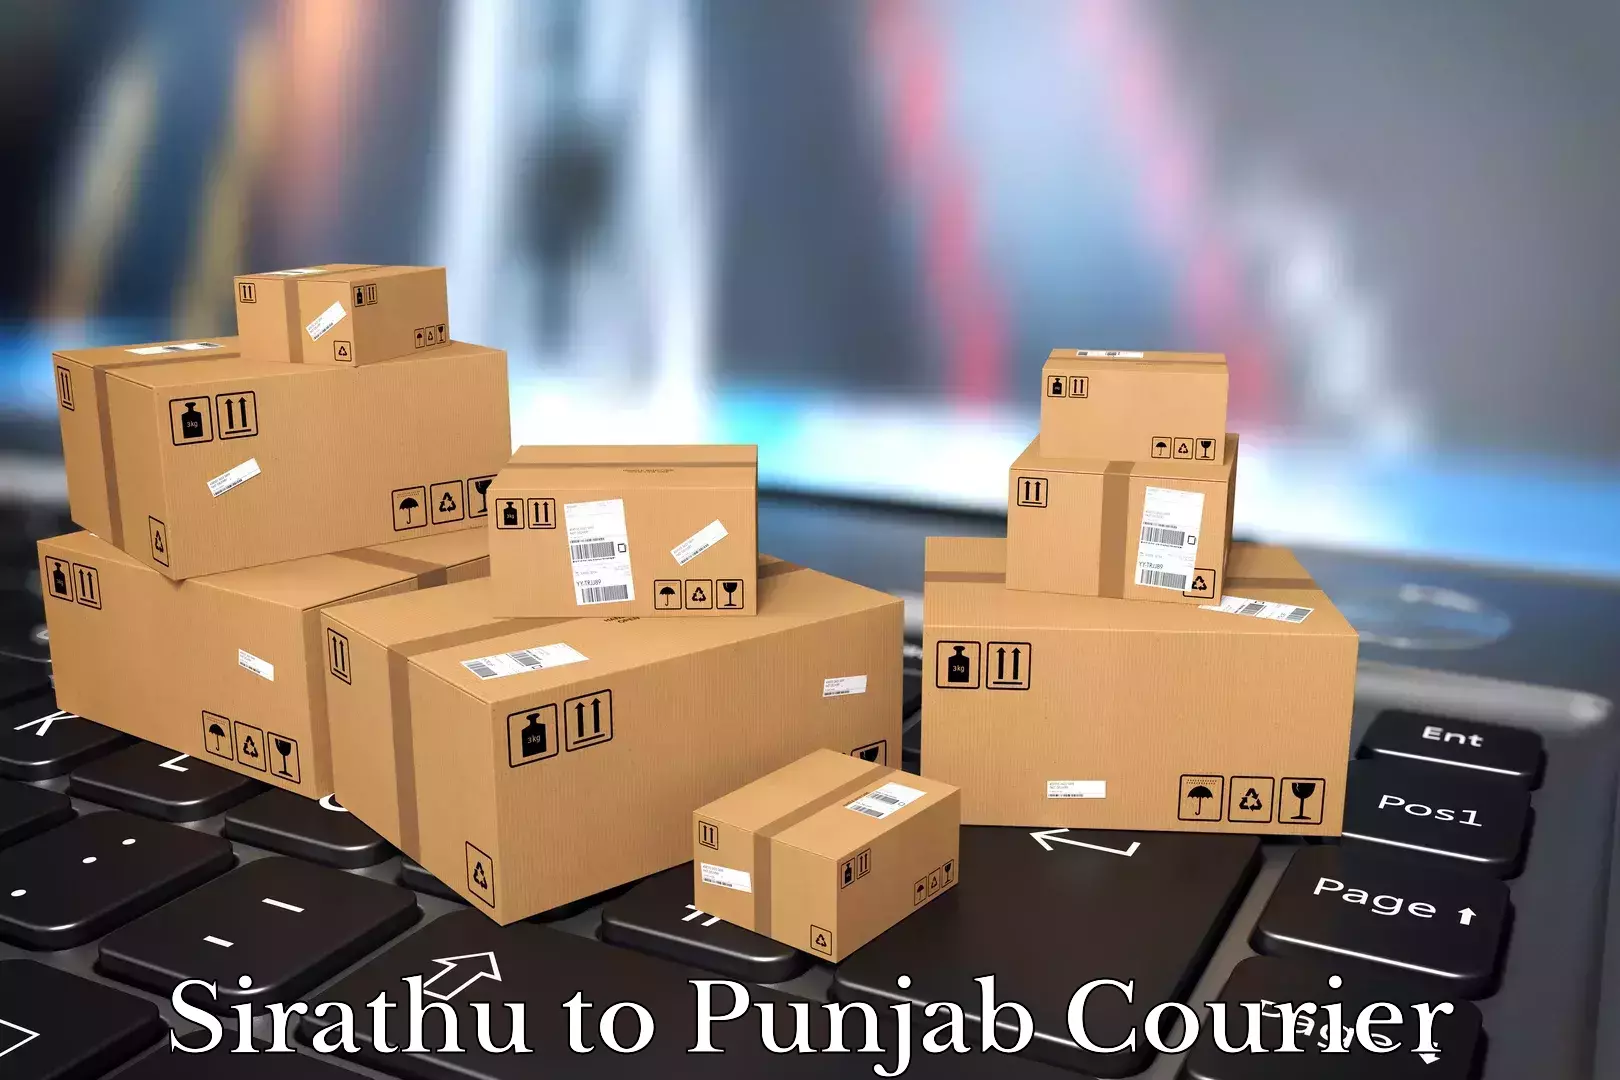 Furniture transport experts Sirathu to Punjab